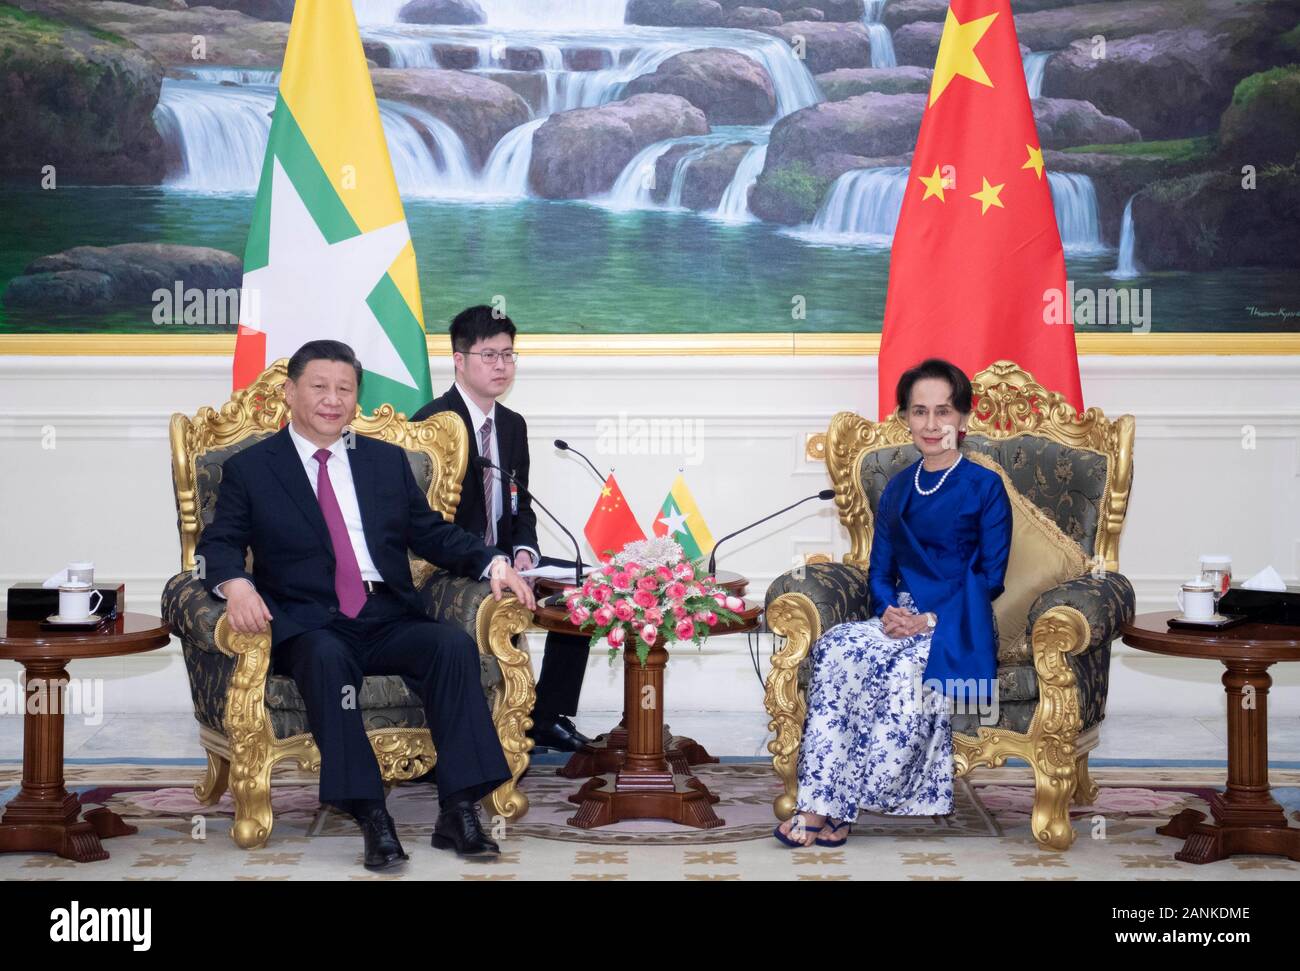 Nay Pyi Taw, le Myanmar. 17 Jan, 2020. Le président chinois Xi Jinping rencontre le conseiller d'État du Myanmar Aung San Suu Kyi, après avoir assisté à une grande cérémonie d'accueil organisée par le président du Myanmar U Win Myint au palais présidentiel à Nay Pyi Taw, le Myanmar, le 17 janvier 2020. Aung San Suu Kyi est entrée au palais présidentiel à prolonger son chaleureuses salutations à Xi. Credit : Xie Huanchi/Xinhua/Alamy Live News Banque D'Images